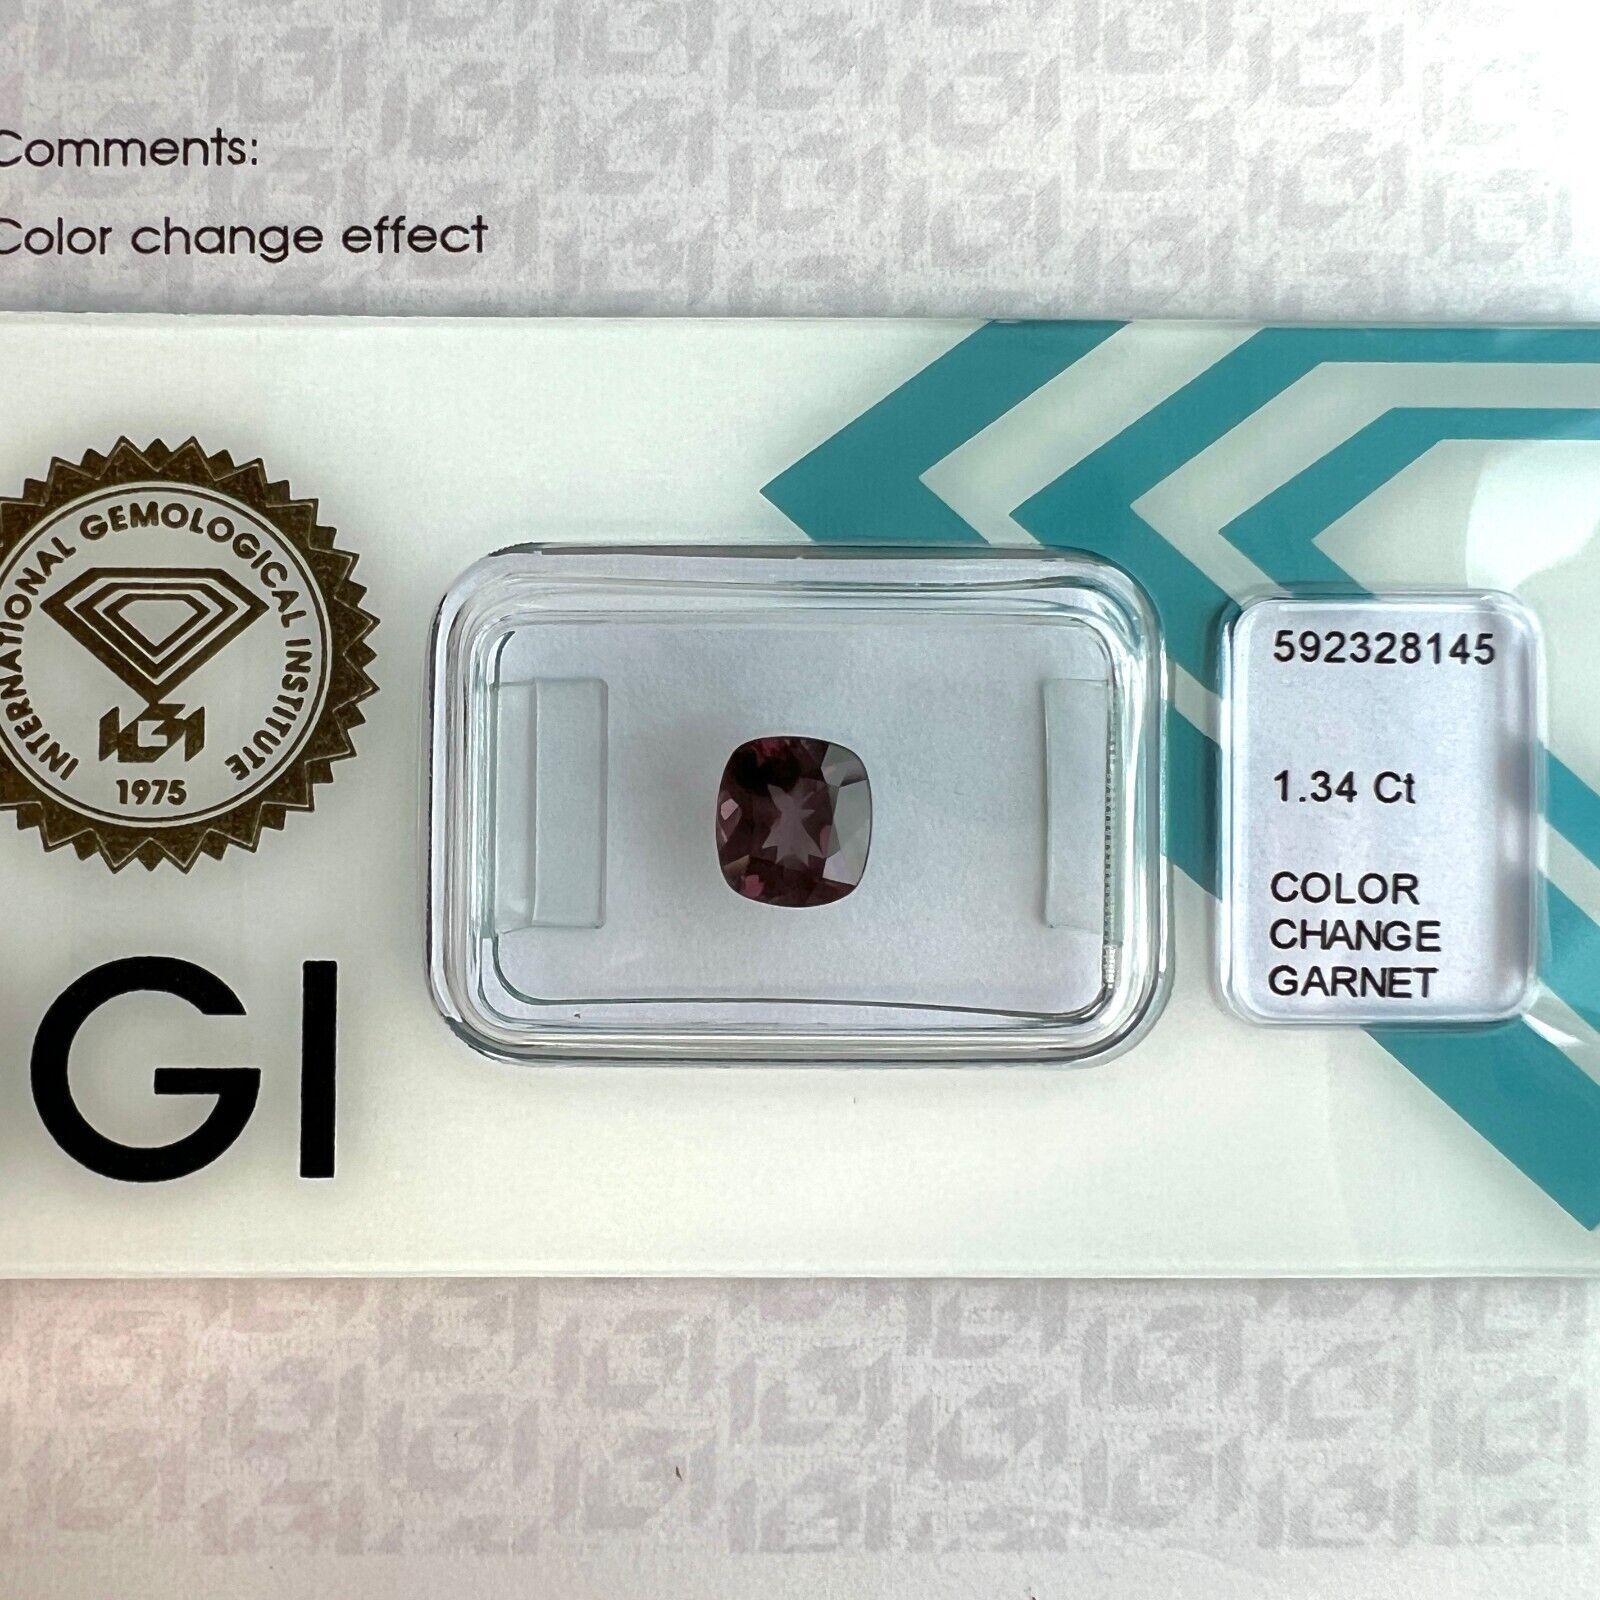 1.34ct Colour Change Garnet Natural Cushion Cut Rare IGI Certified Gemstone (pierre précieuse certifiée IGI)

Pierre précieuse unique, rare et non traitée, de couleur changeante, en grenat.
Grenat non traité de 1,34 carat avec un rare effet de